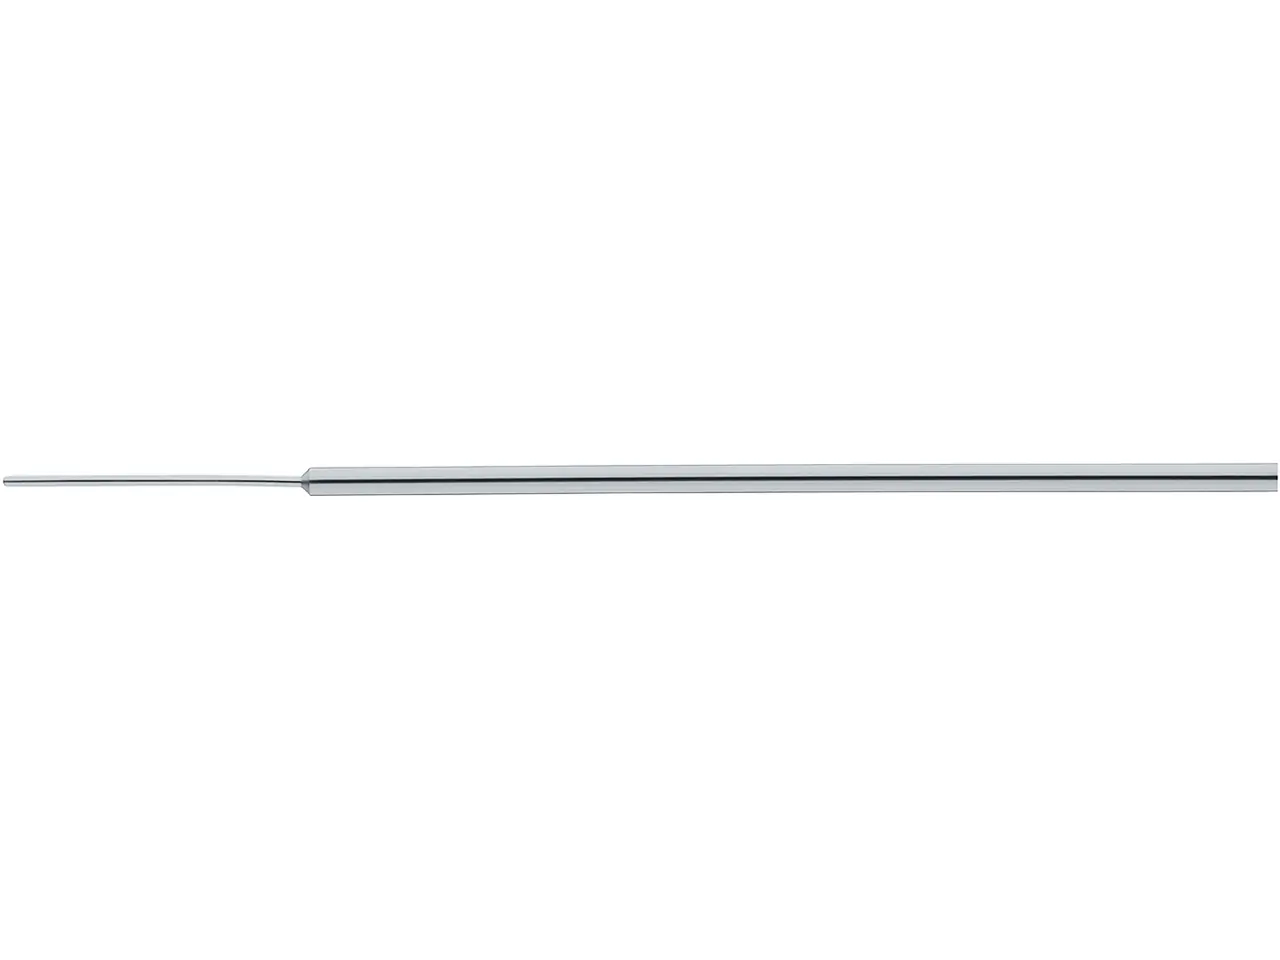 Caliper, Ø 0.4 mm, angled | KARL STORZ Endoskope